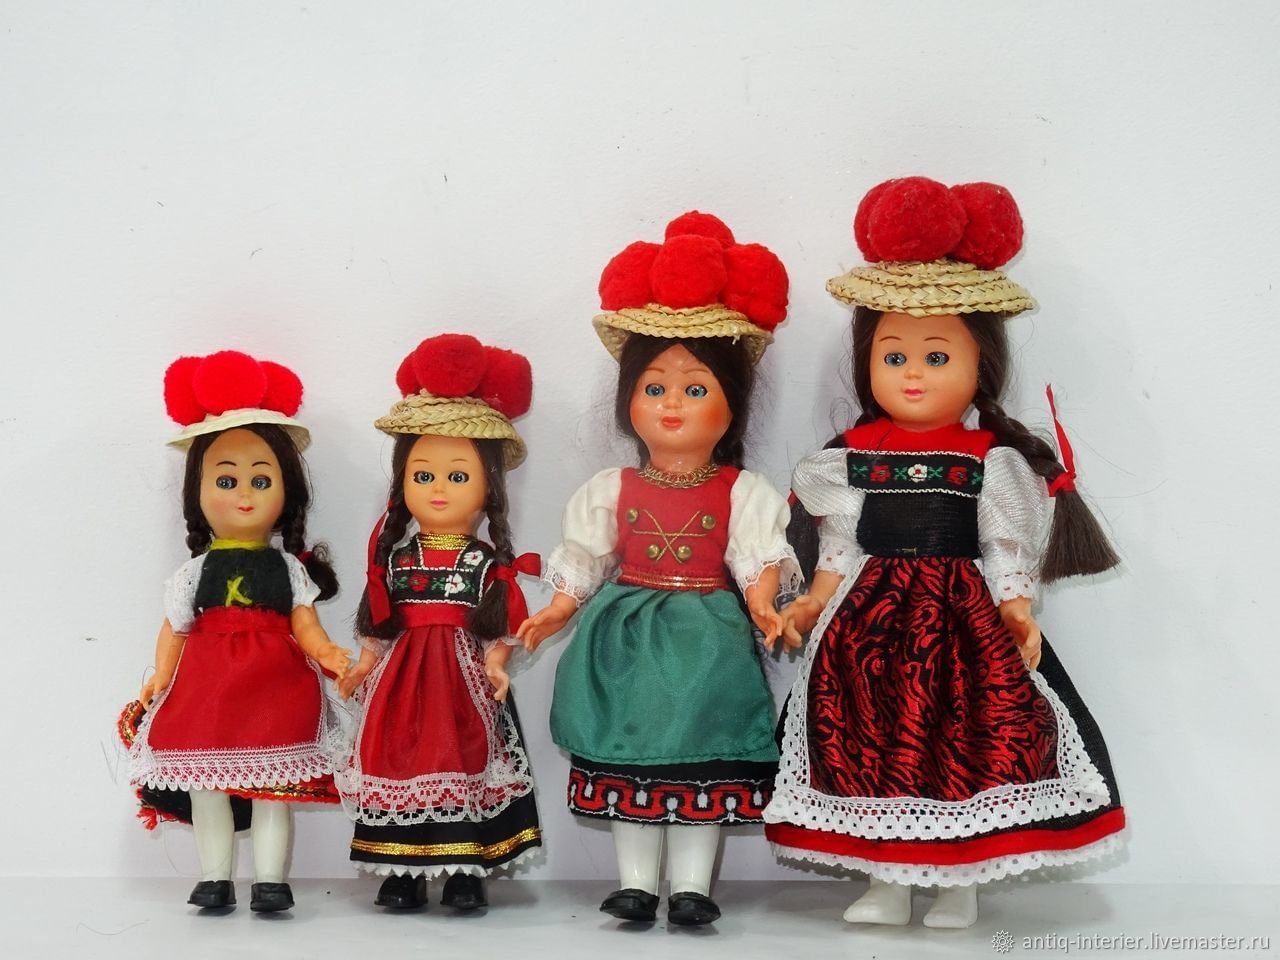 Купить кукол в национальных костюмах. Сувенирные куклы. Итальянская Национальная кукла. Сувенирные куклы в национальных костюмах. Фарфоровые куклы в национальных костюмах.